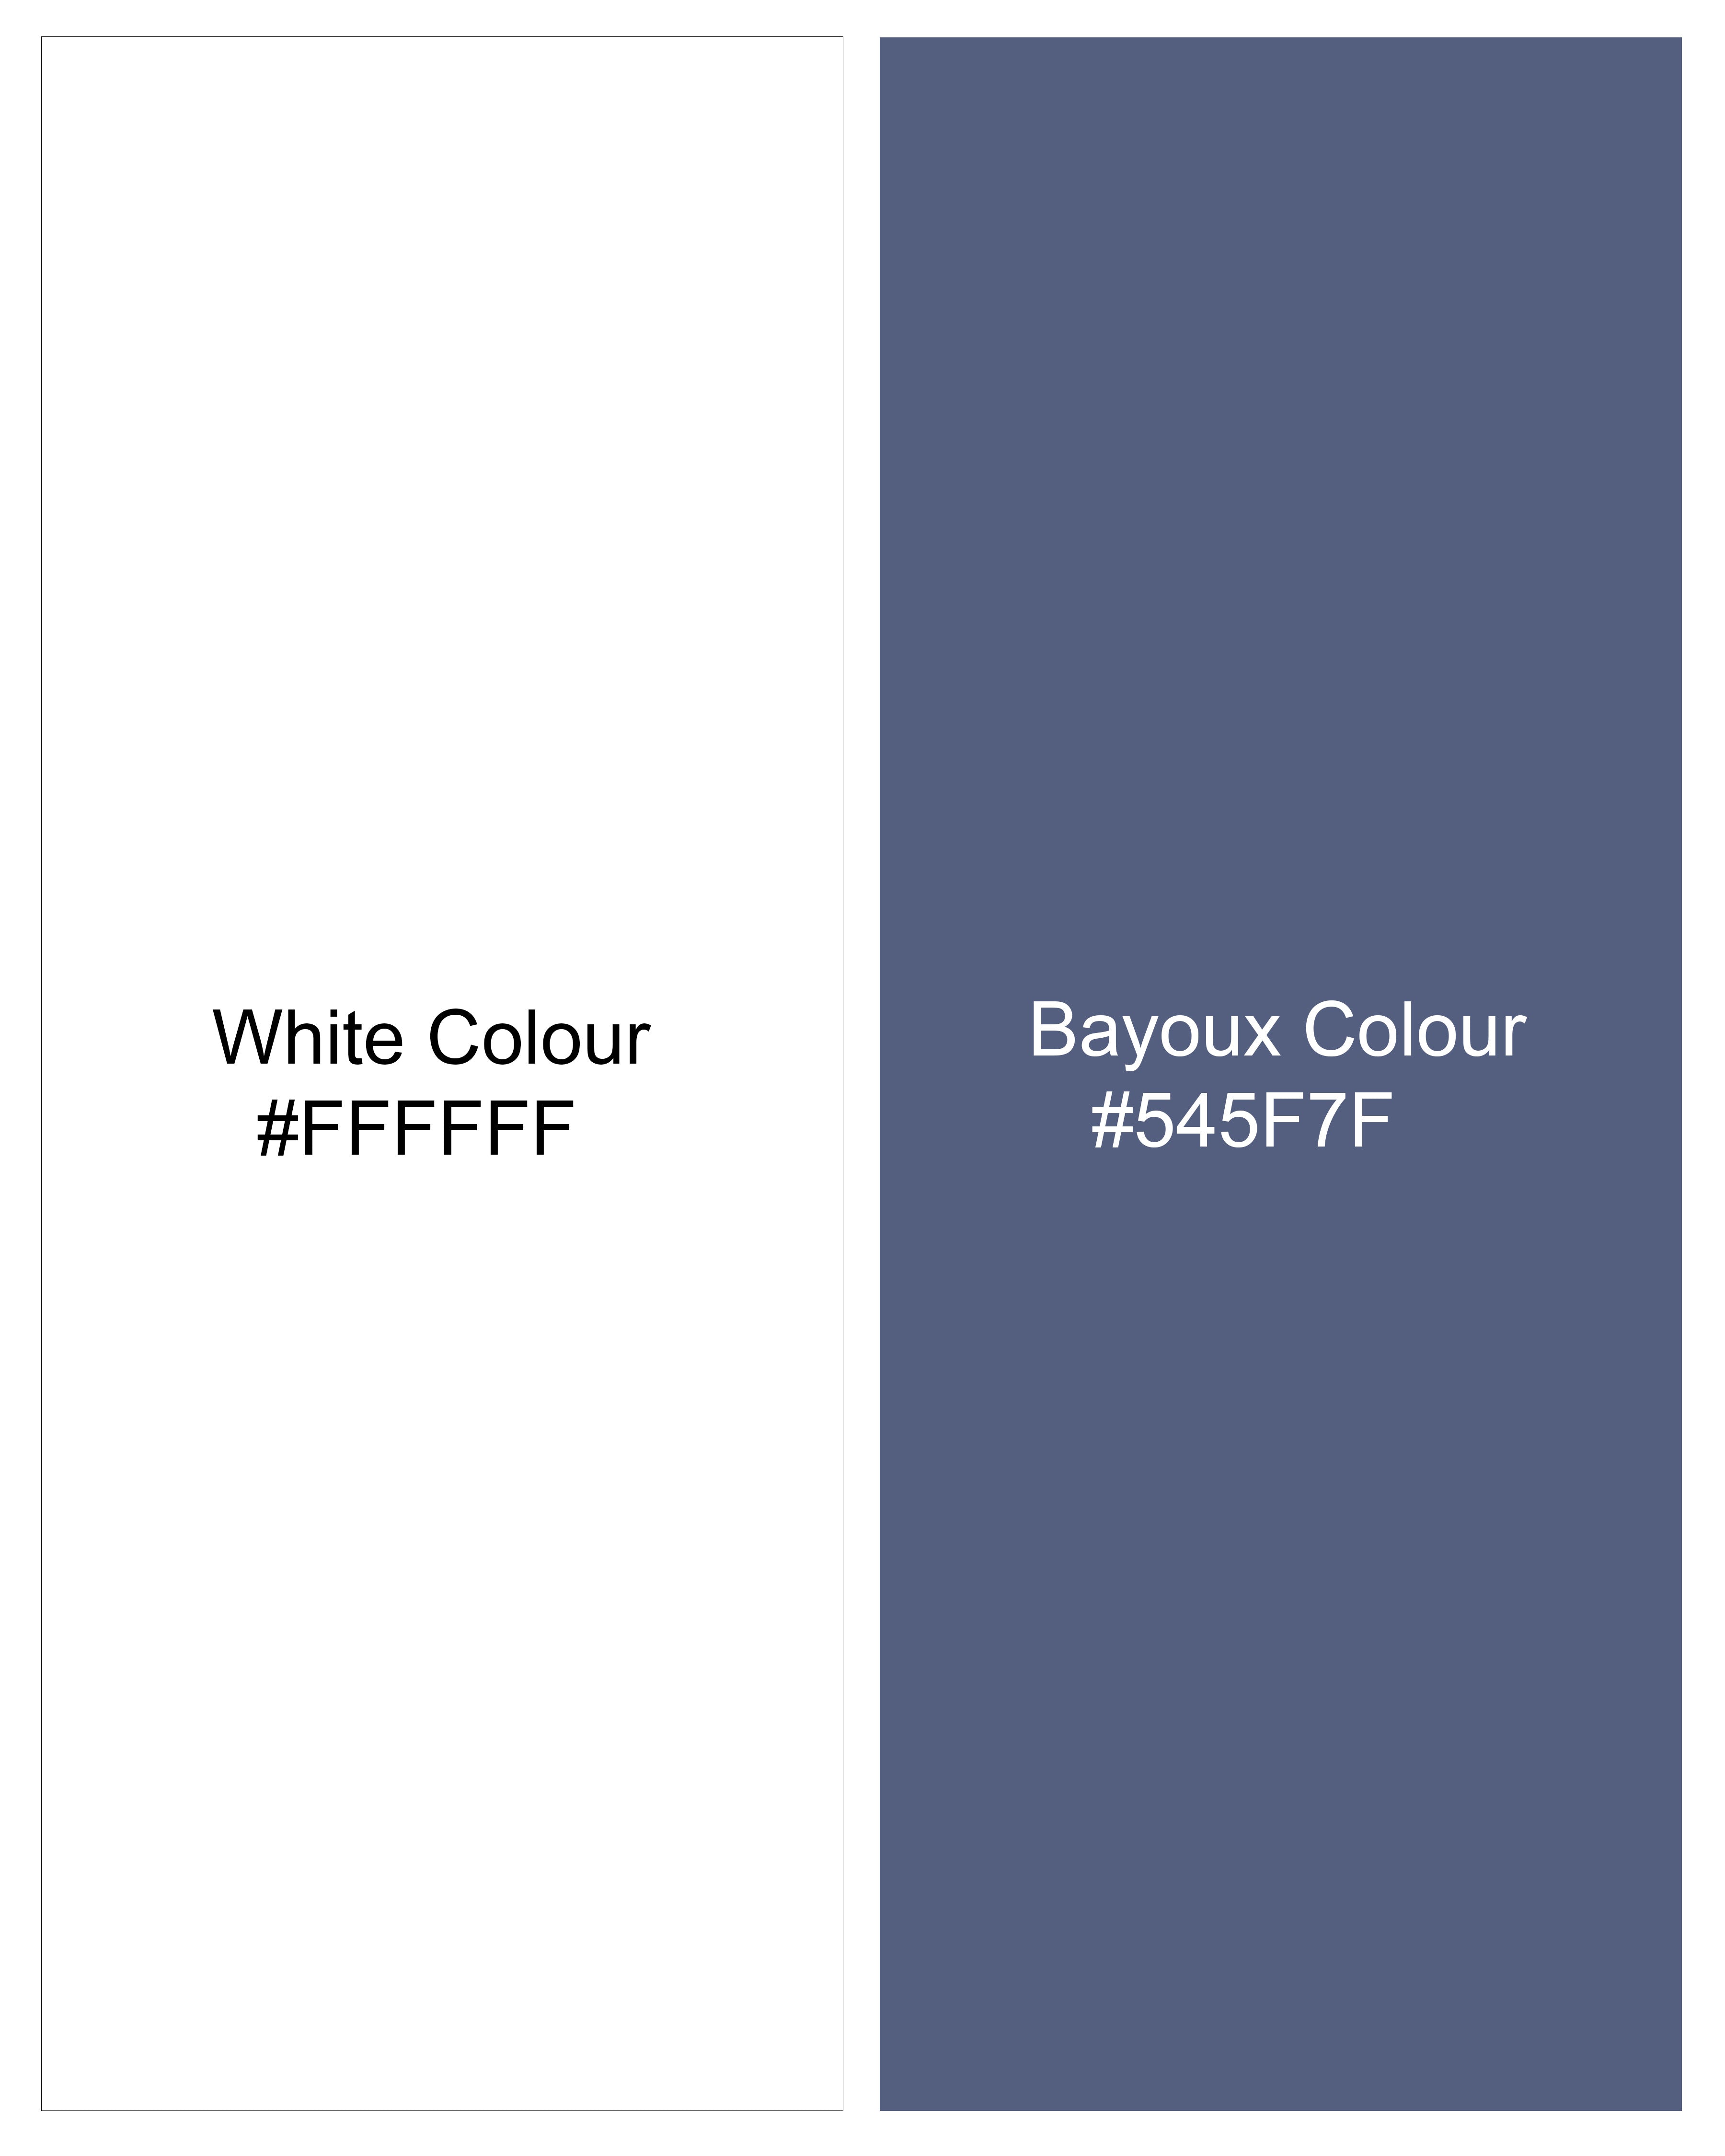 Bayoux Blue with White Pin Striped Seersucker Giza Cotton Shirt 9224-BD-BLE-38,9224-BD-BLE-H-38,9224-BD-BLE-39,9224-BD-BLE-H-39,9224-BD-BLE-40,9224-BD-BLE-H-40,9224-BD-BLE-42,9224-BD-BLE-H-42,9224-BD-BLE-44,9224-BD-BLE-H-44,9224-BD-BLE-46,9224-BD-BLE-H-46,9224-BD-BLE-48,9224-BD-BLE-H-48,9224-BD-BLE-50,9224-BD-BLE-H-50,9224-BD-BLE-52,9224-BD-BLE-H-52\